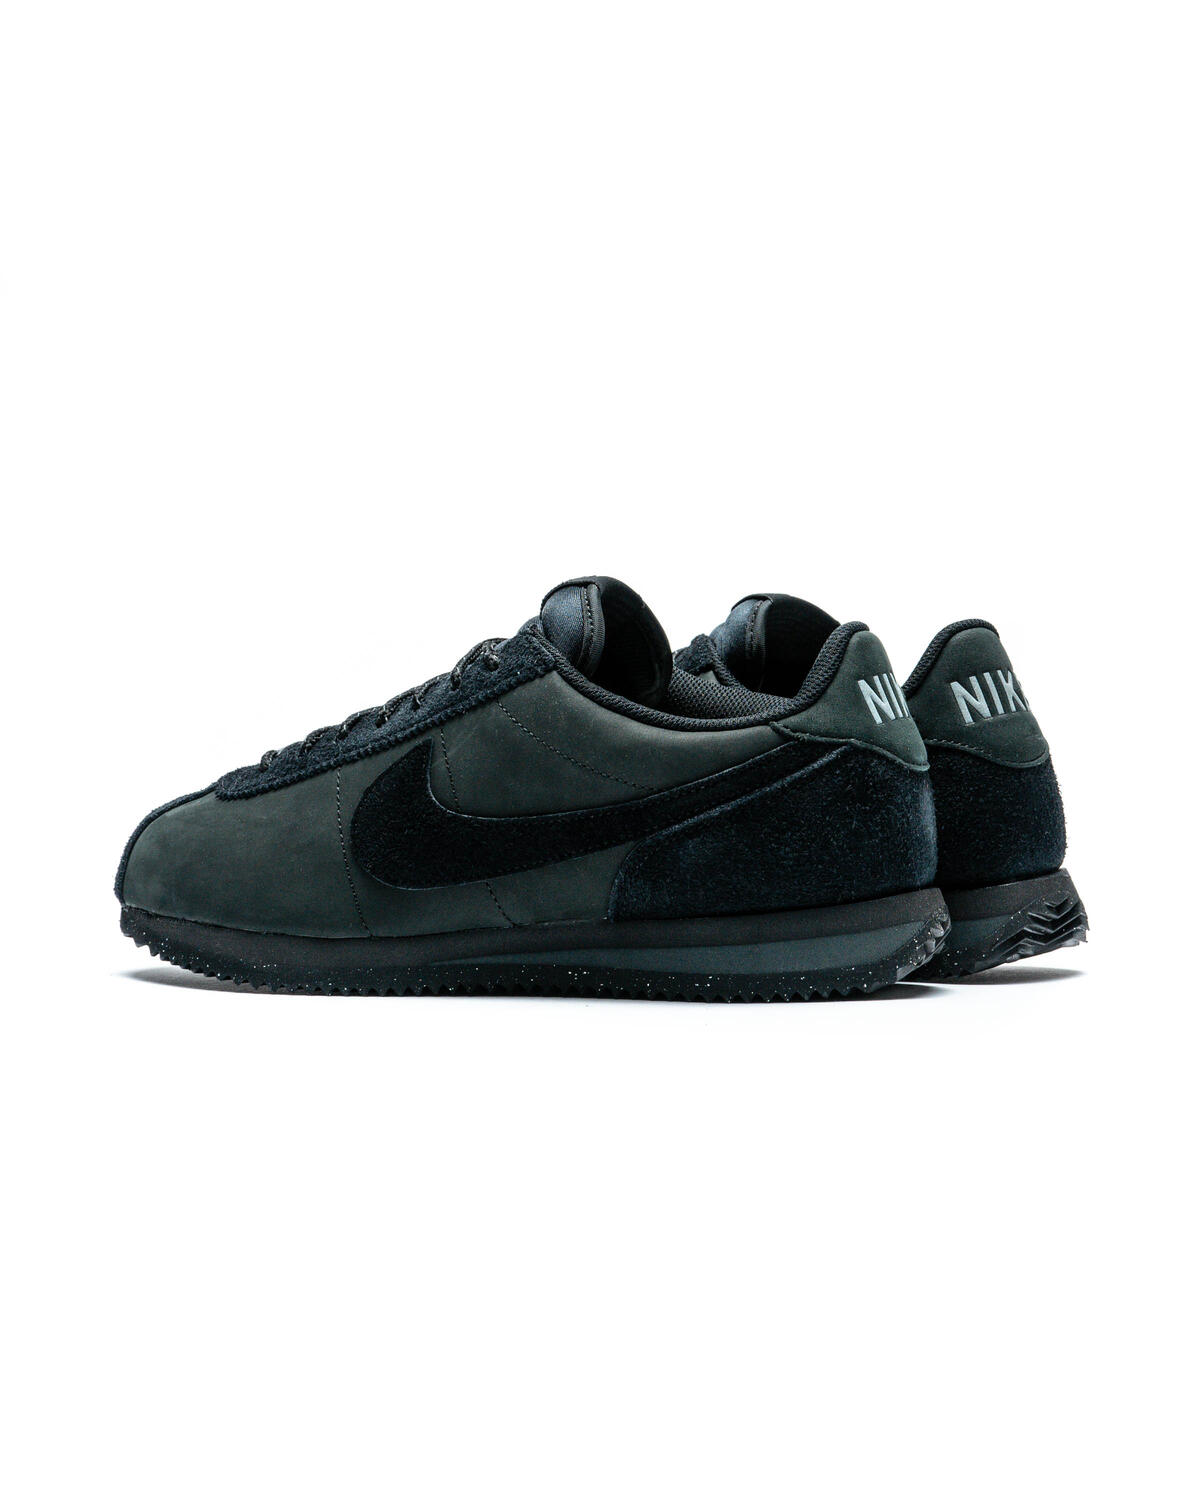 Nike Cortez PRM Triple Black FJ5465-010 Release